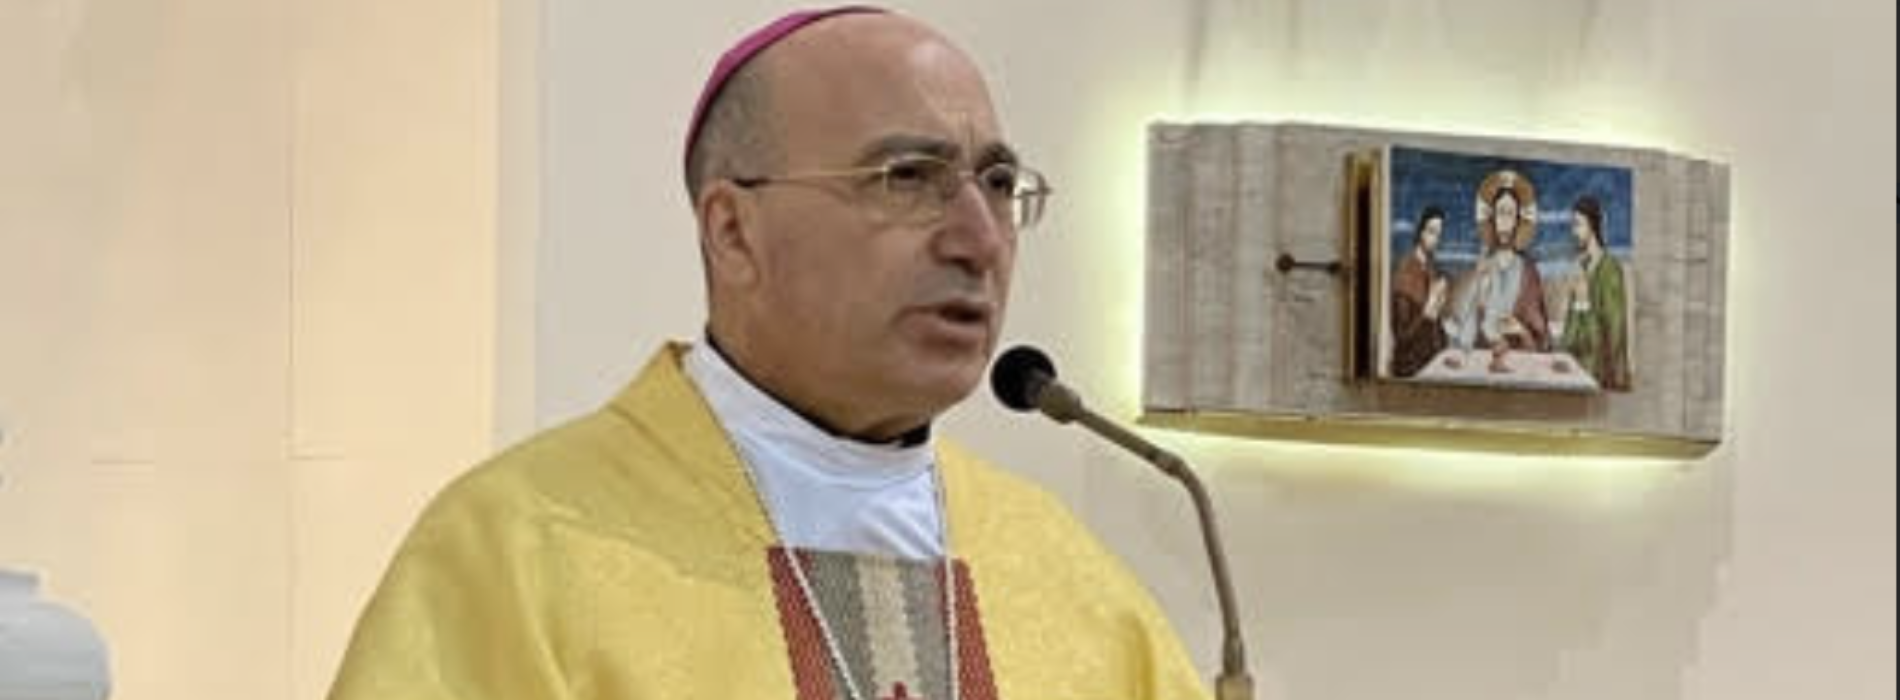 Capua e Caserta unite, Pietro Lagnese vescovo di due diocesi